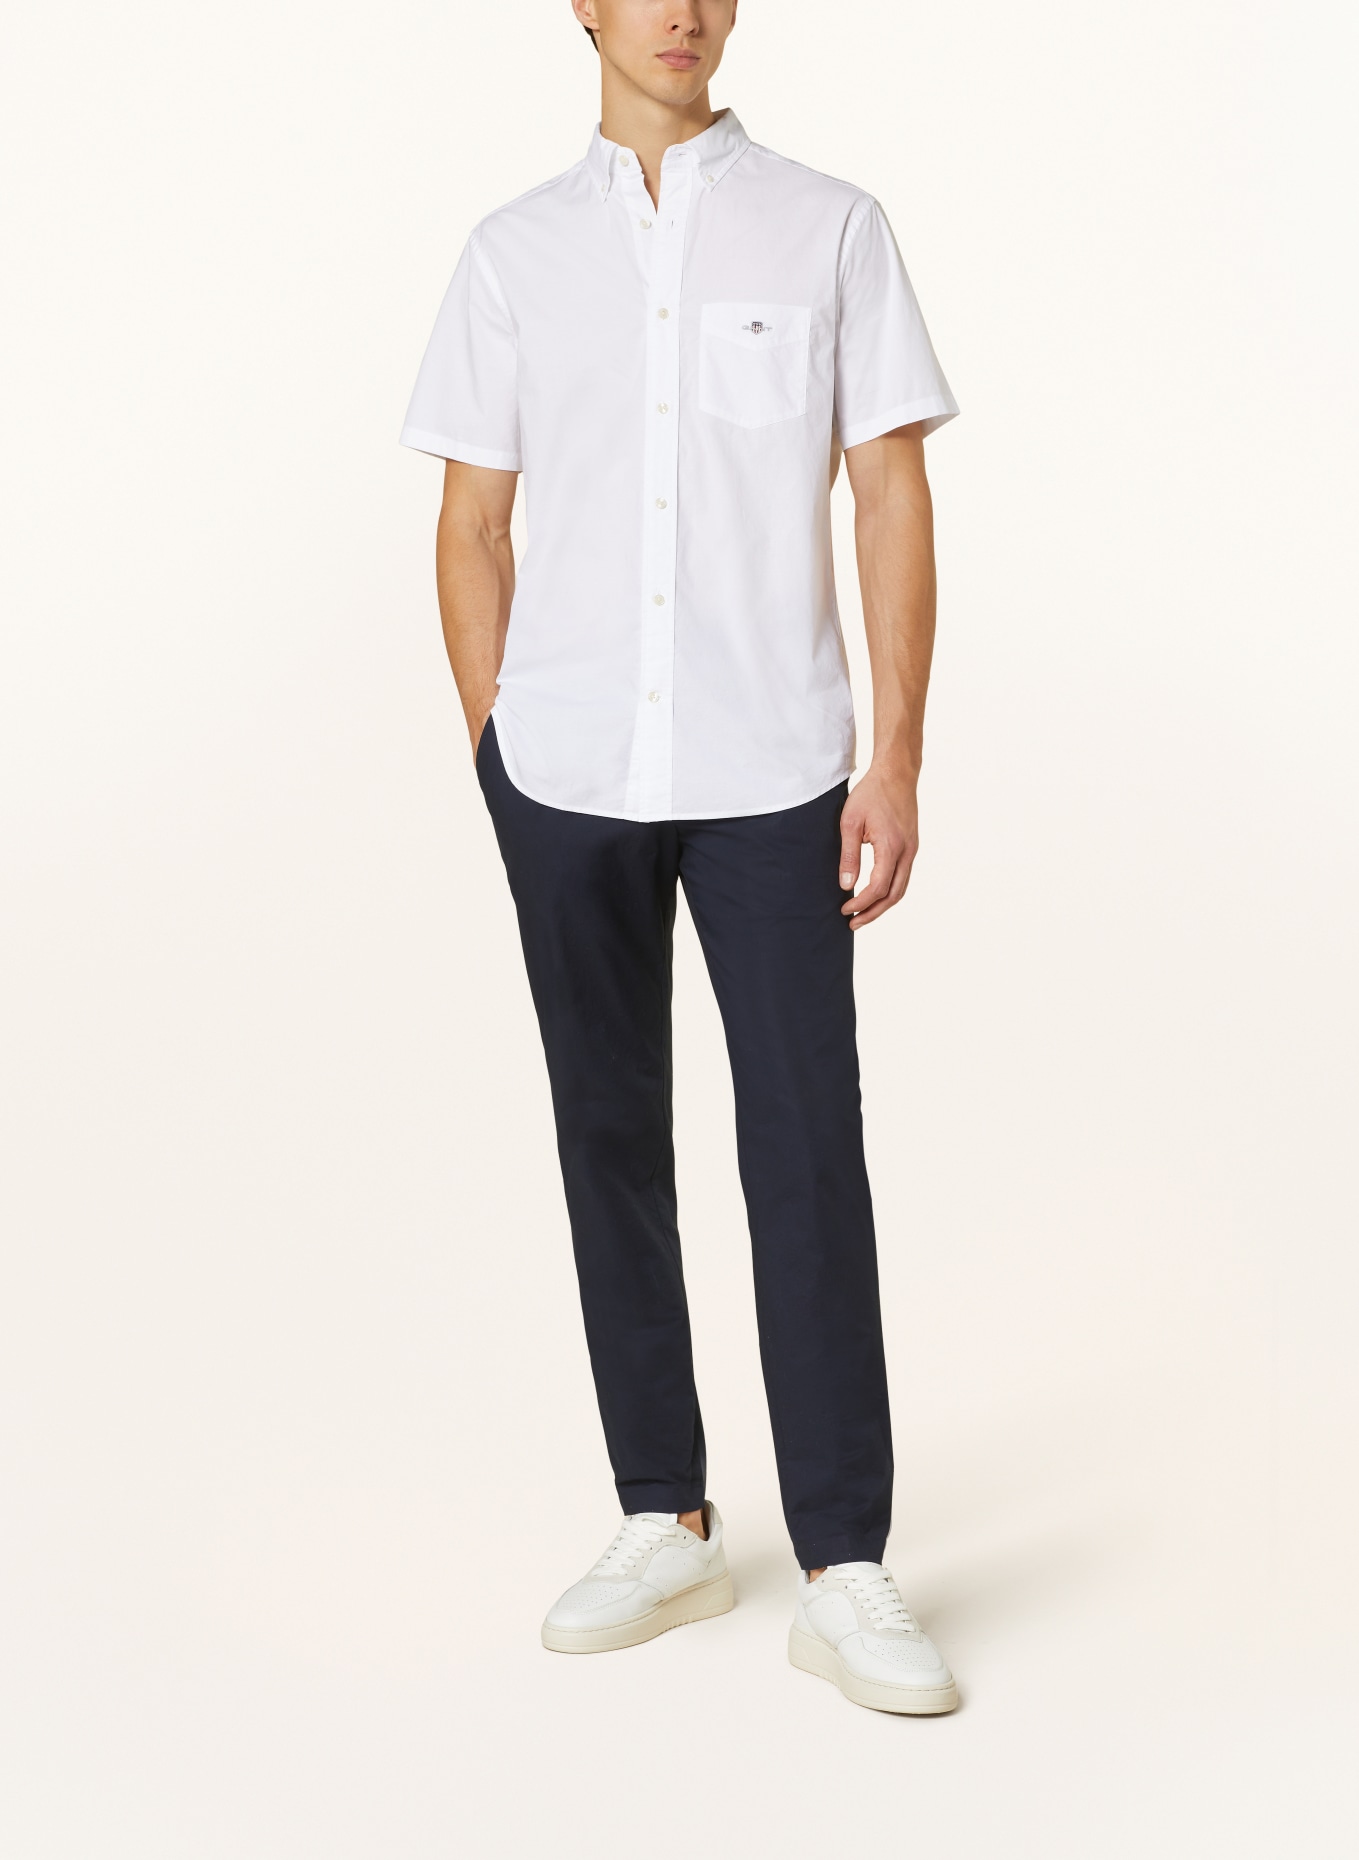 GANT Short sleeve shirt comfort fit, Color: WHITE (Image 2)